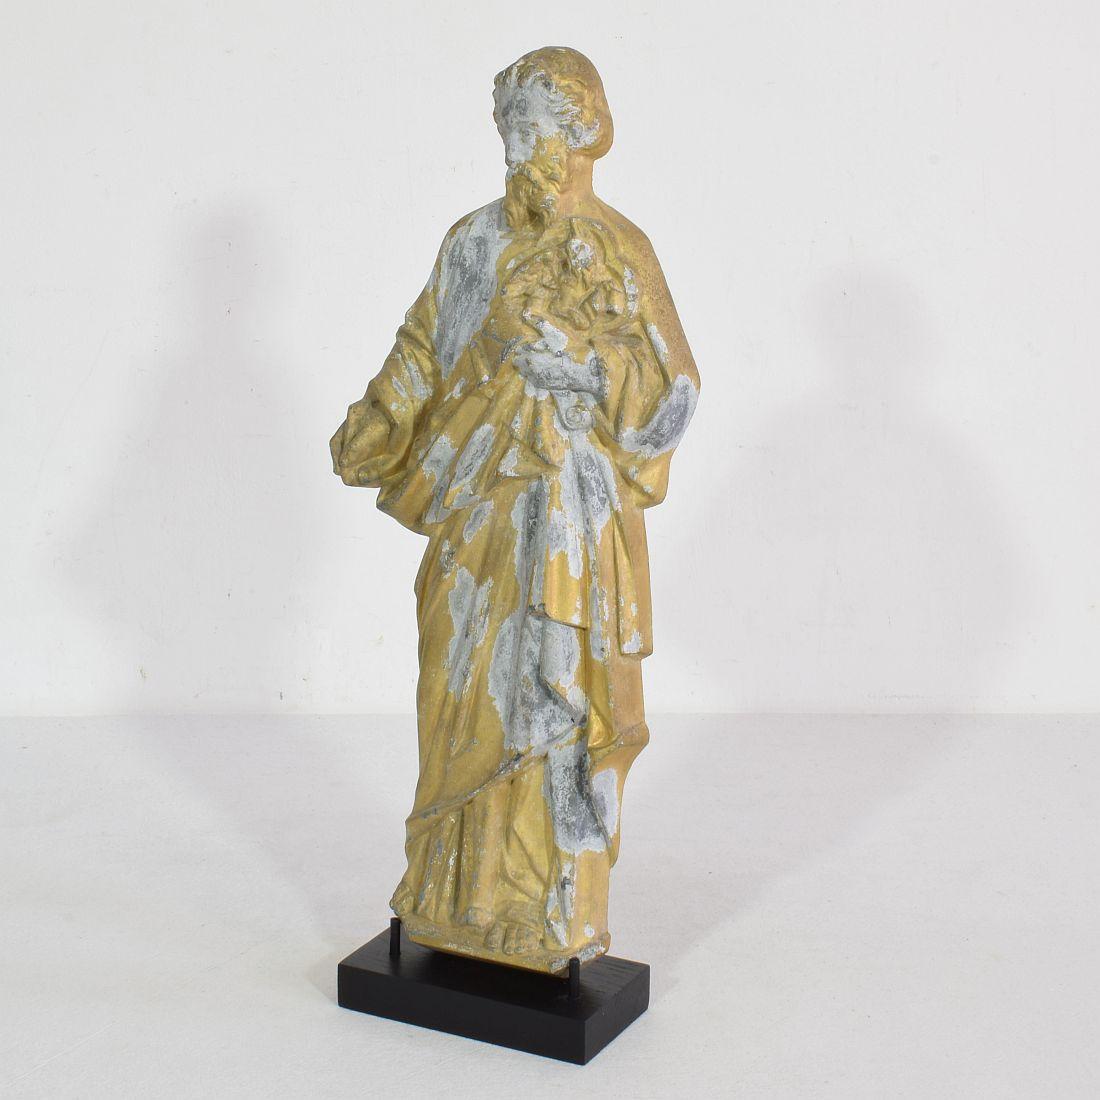 Merveilleuse statue de saint en métal doré avec une belle expression.
France, vers 1880-1900.
Météorisé. Les mesures incluent la base en bois.